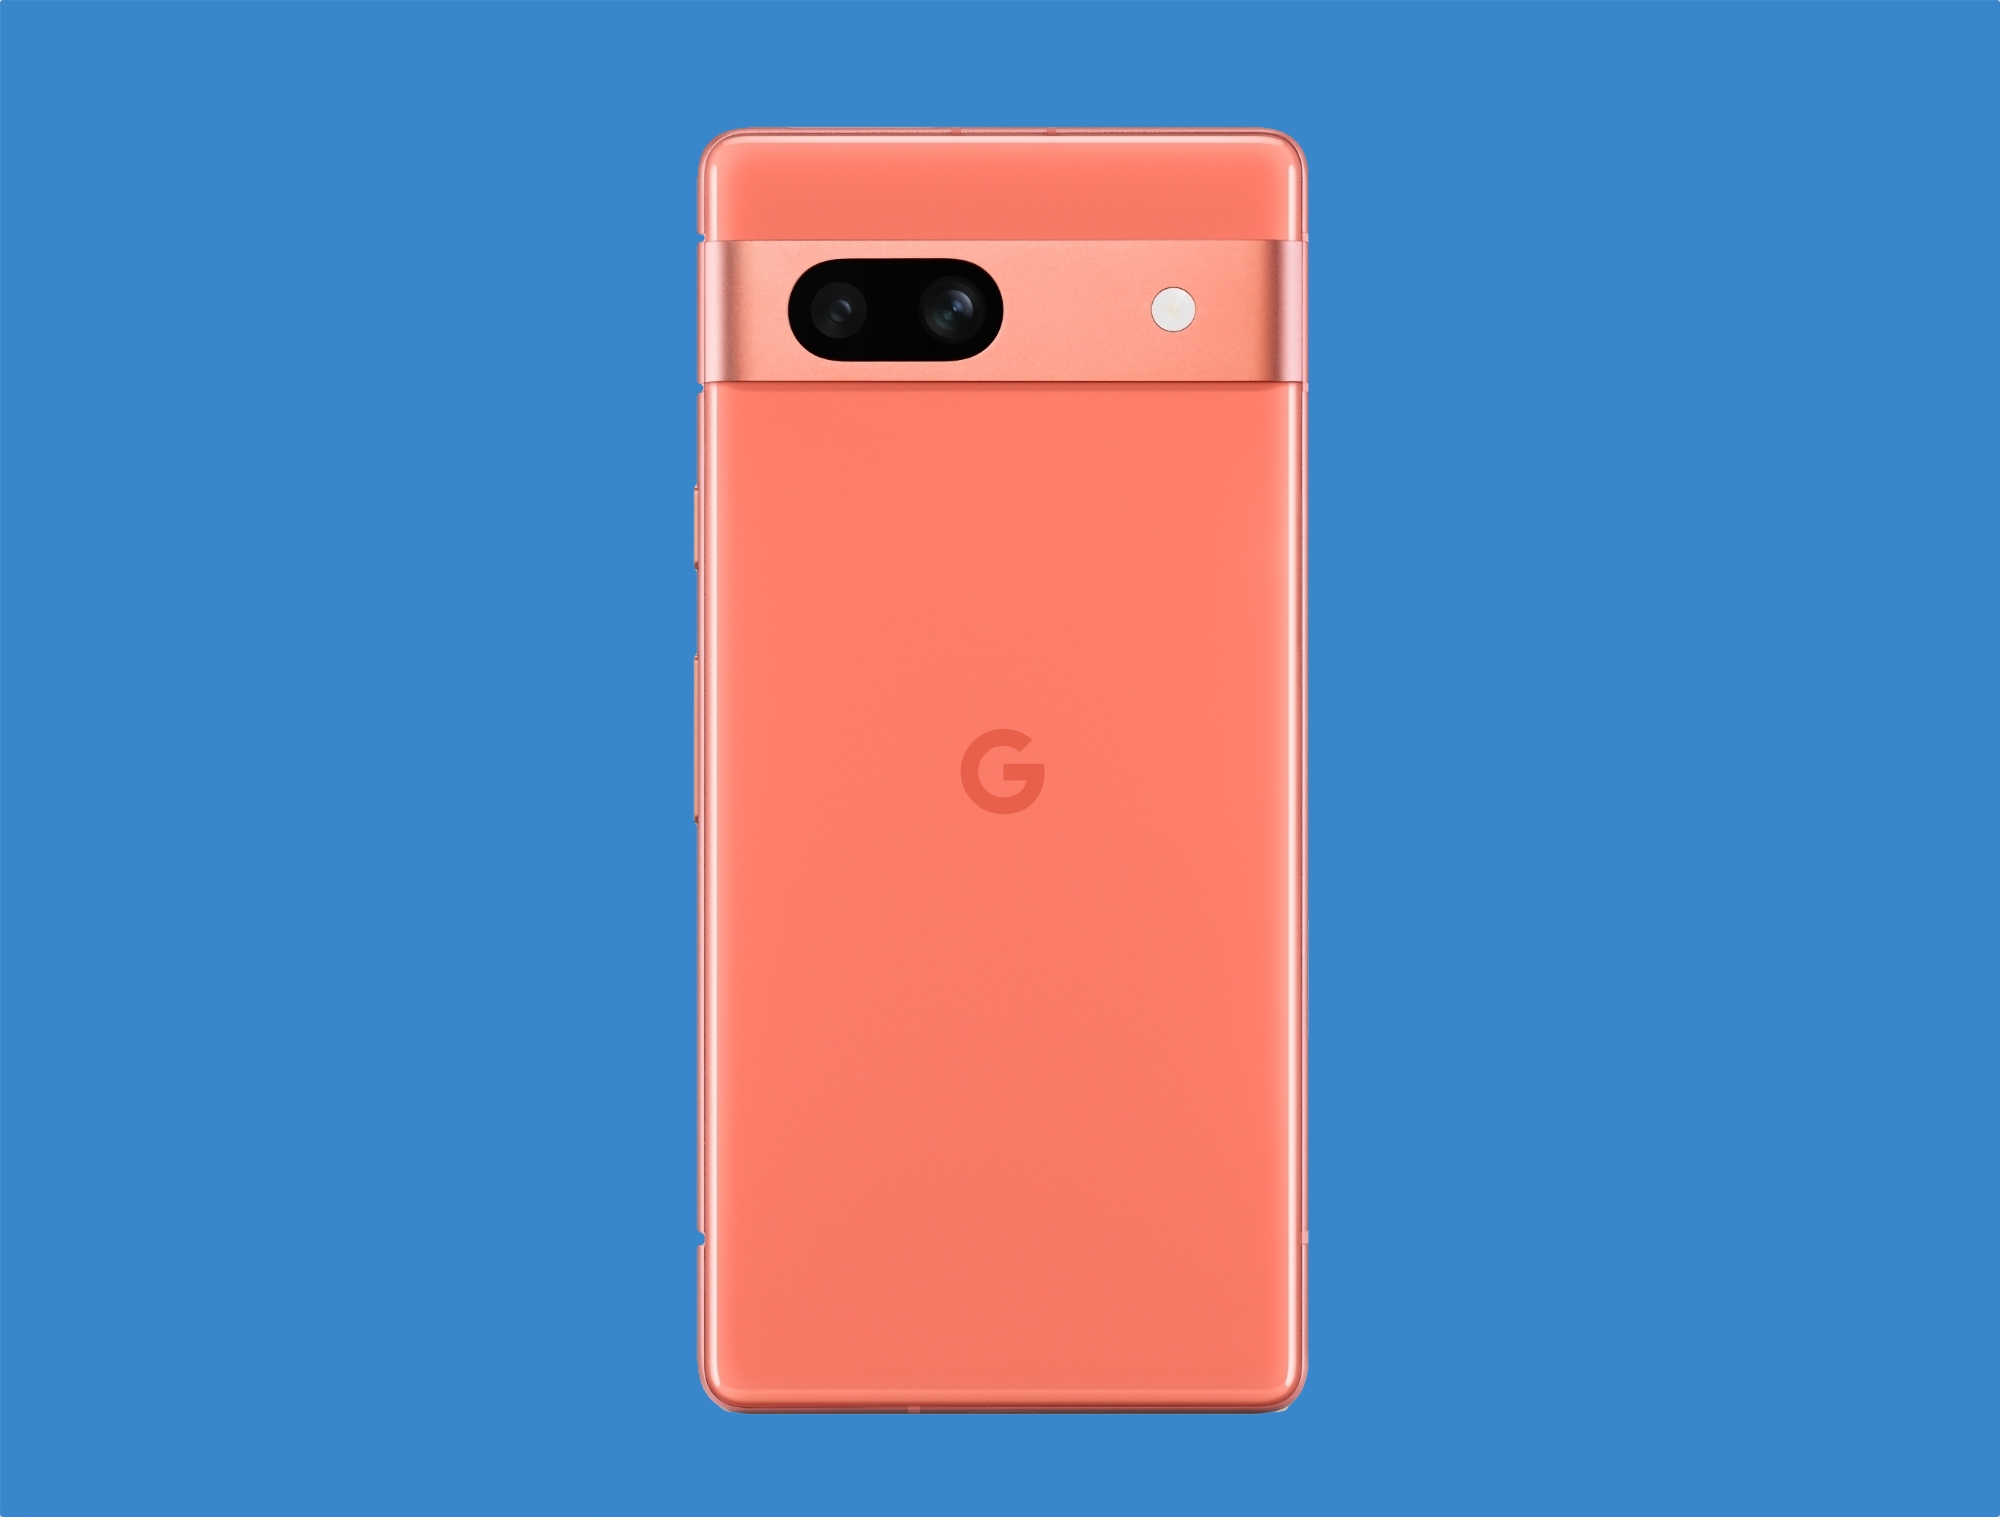 Insider ujawnia, jak będzie wyglądał Google Pixel 7a w ekskluzywnym kolorze Coral